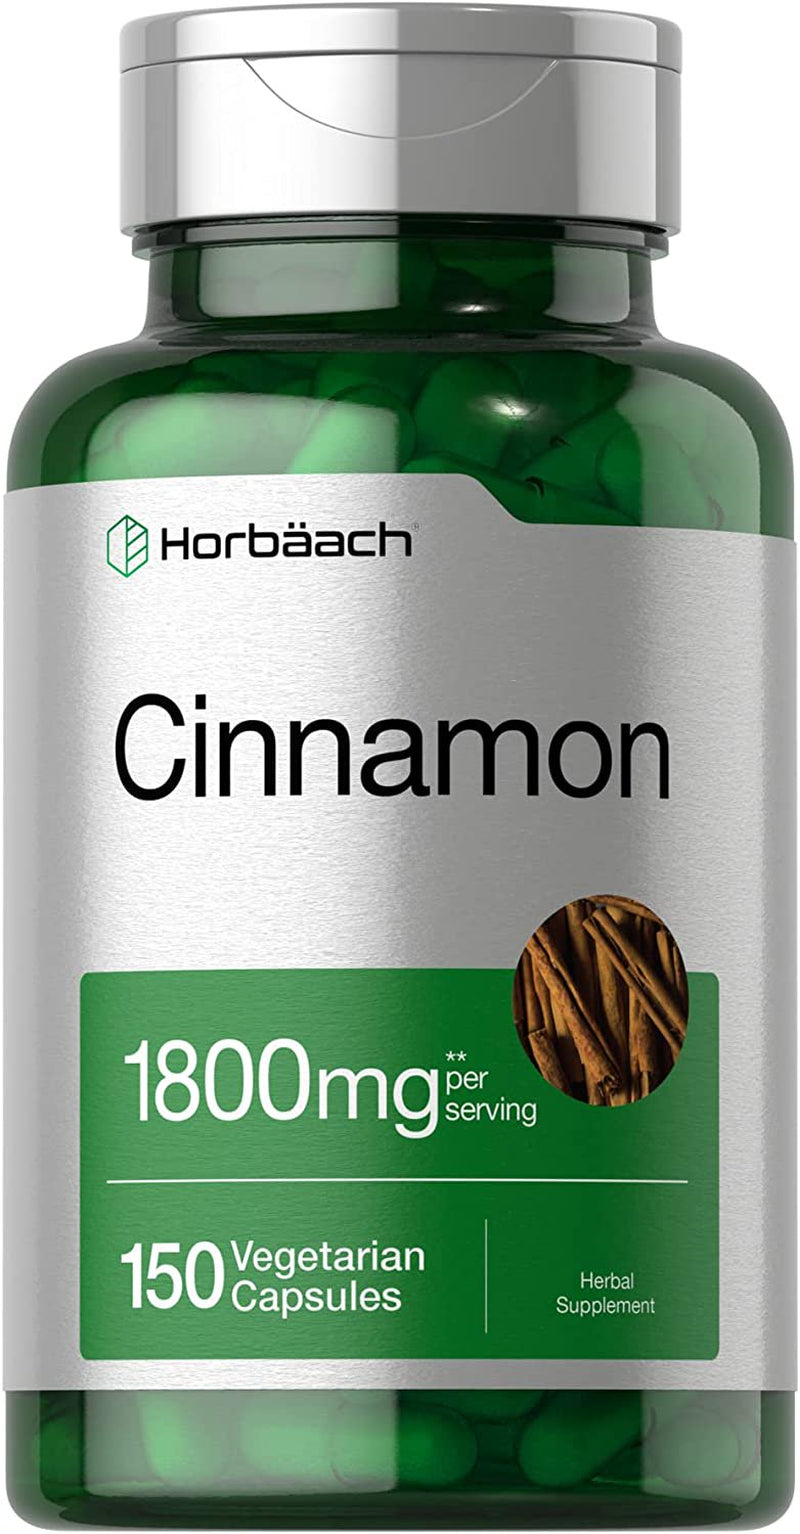 Cinnamon Supplement 1800Mg | 150 Vegetarian Capsules | by Horbaach